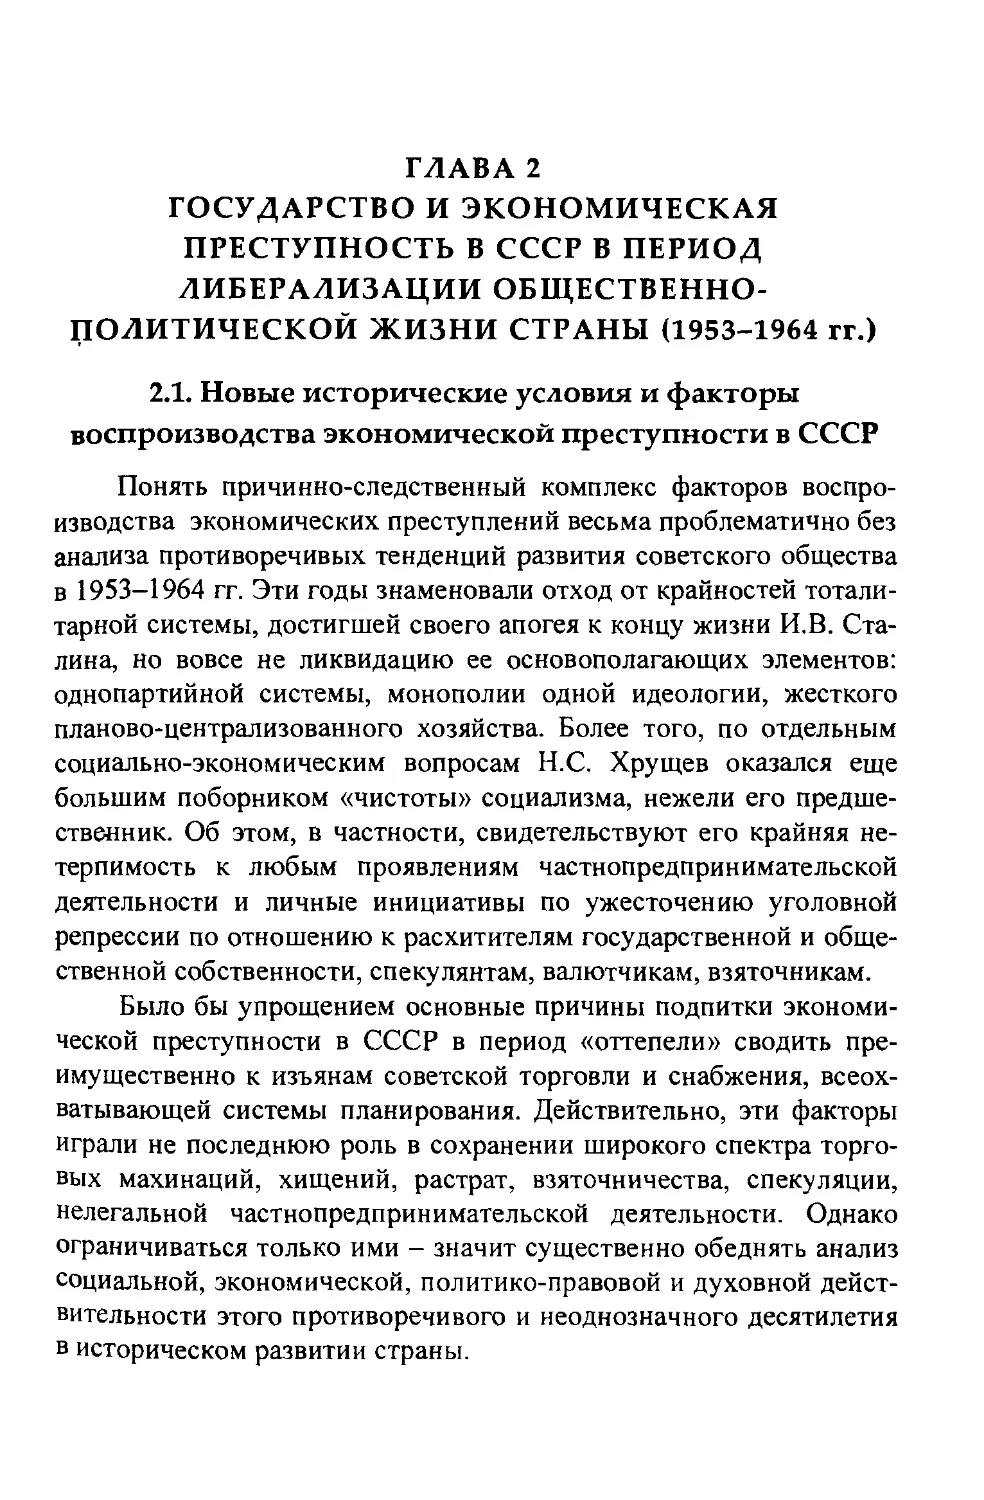 2.1. Ноые исторические условия и факторы воспроизводства экономической преступности в СССР